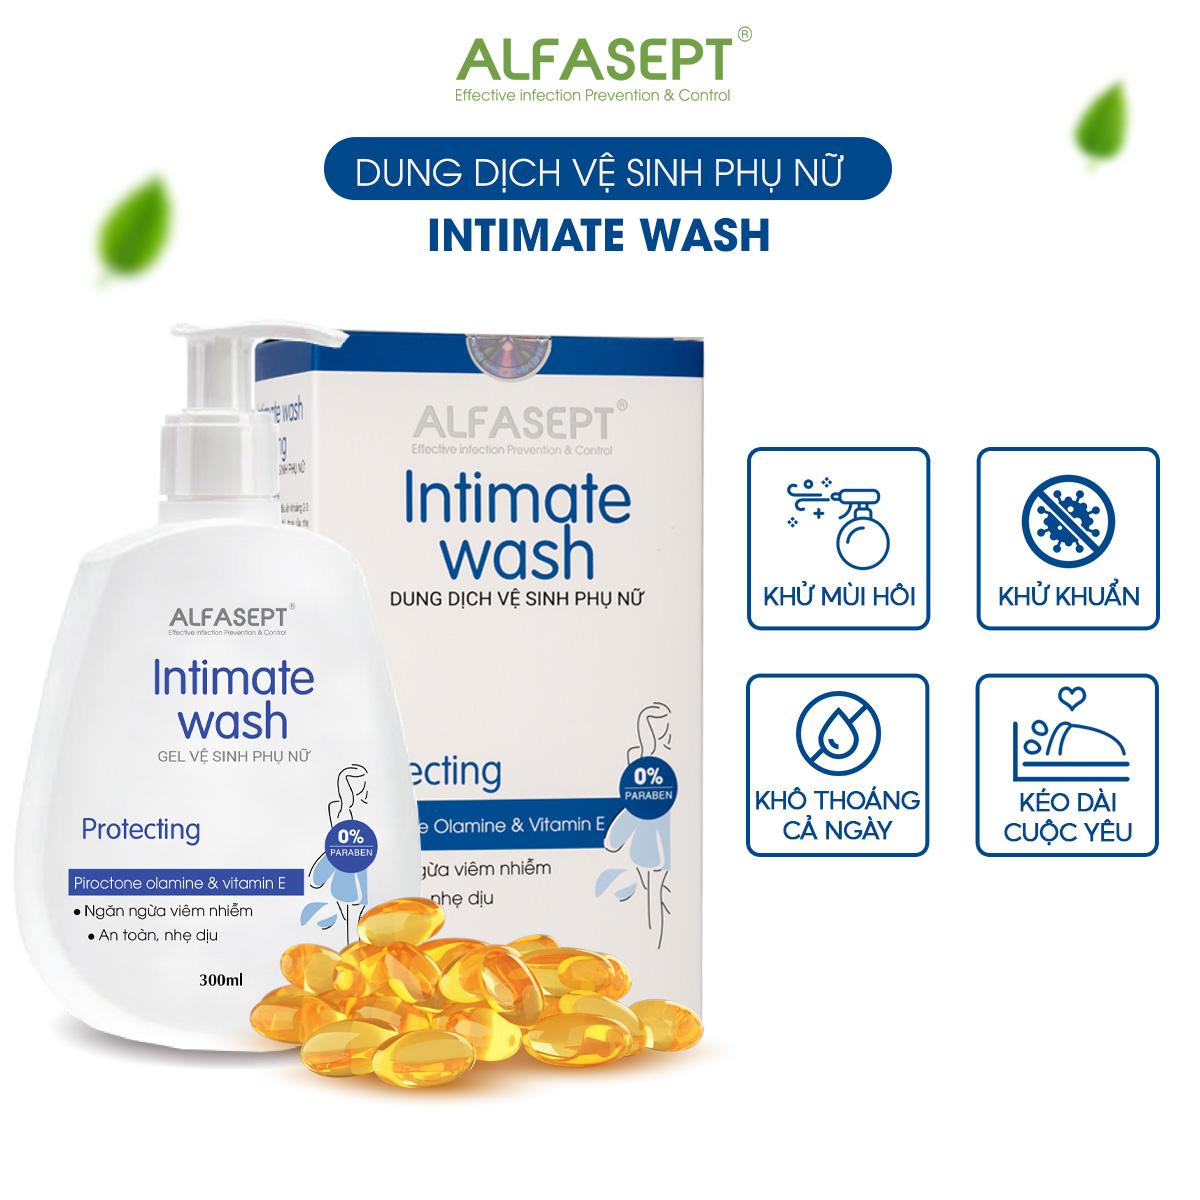 Dung dịch vệ sinh phụ nữ ALFASEPT Intimate Wash Protecting giúp khử mùi, khô thoáng cả ngày Chai 300ml